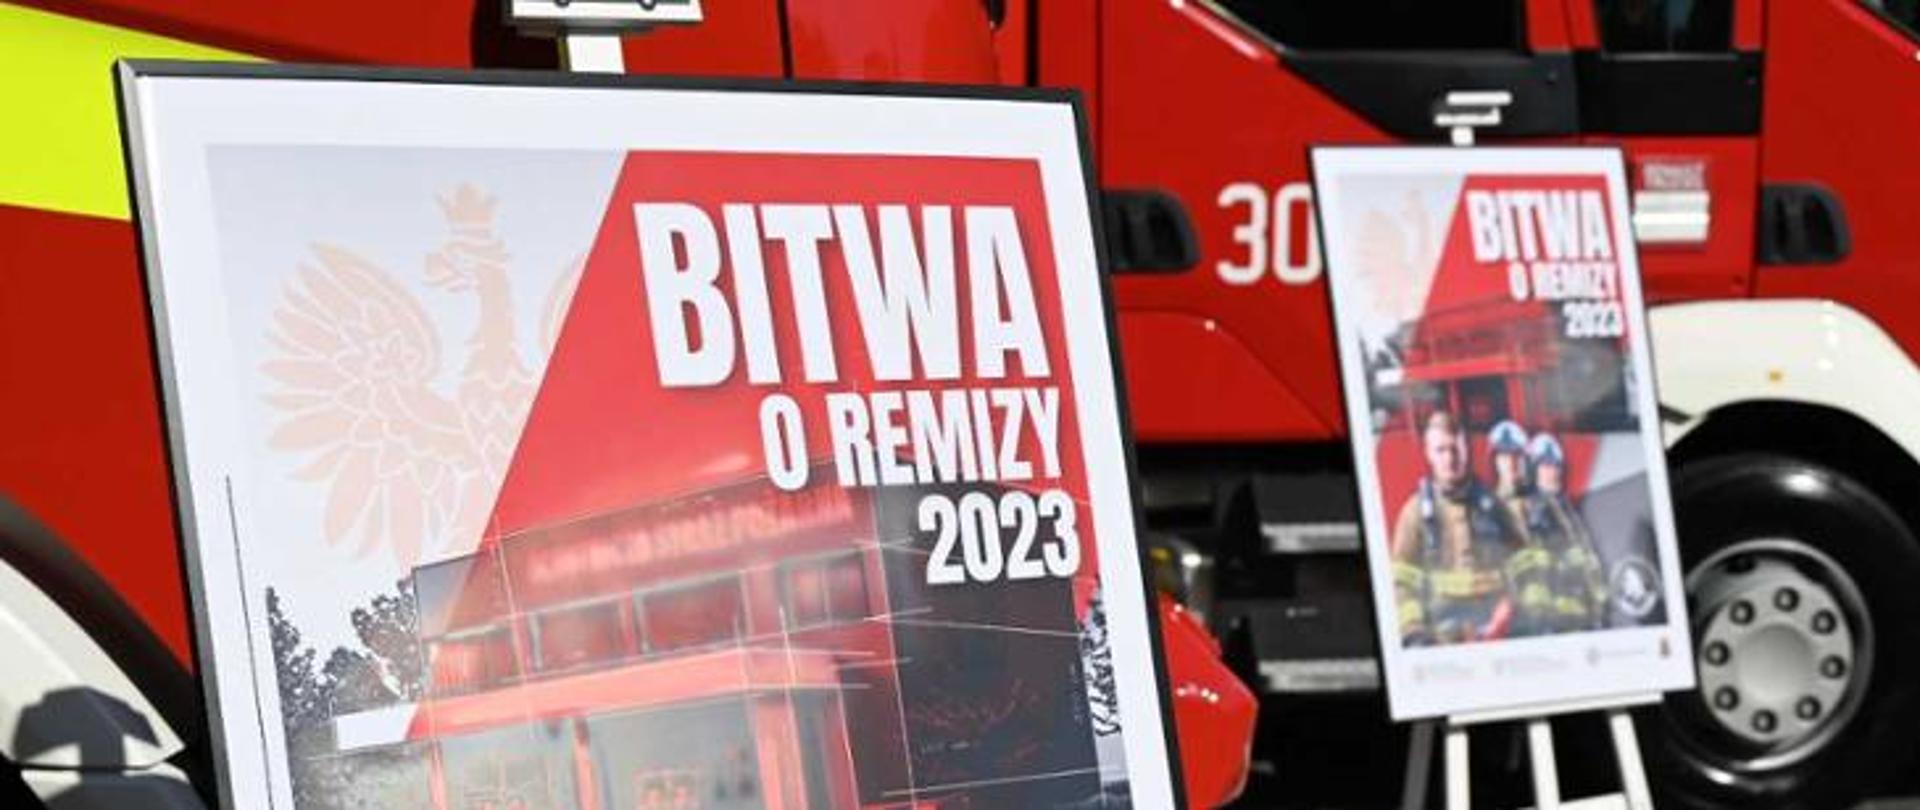 Zdjęcie przedstawia dwa plakaty akcji "Bitwa o Remizy 2023". W tle samochód pożarniczy.